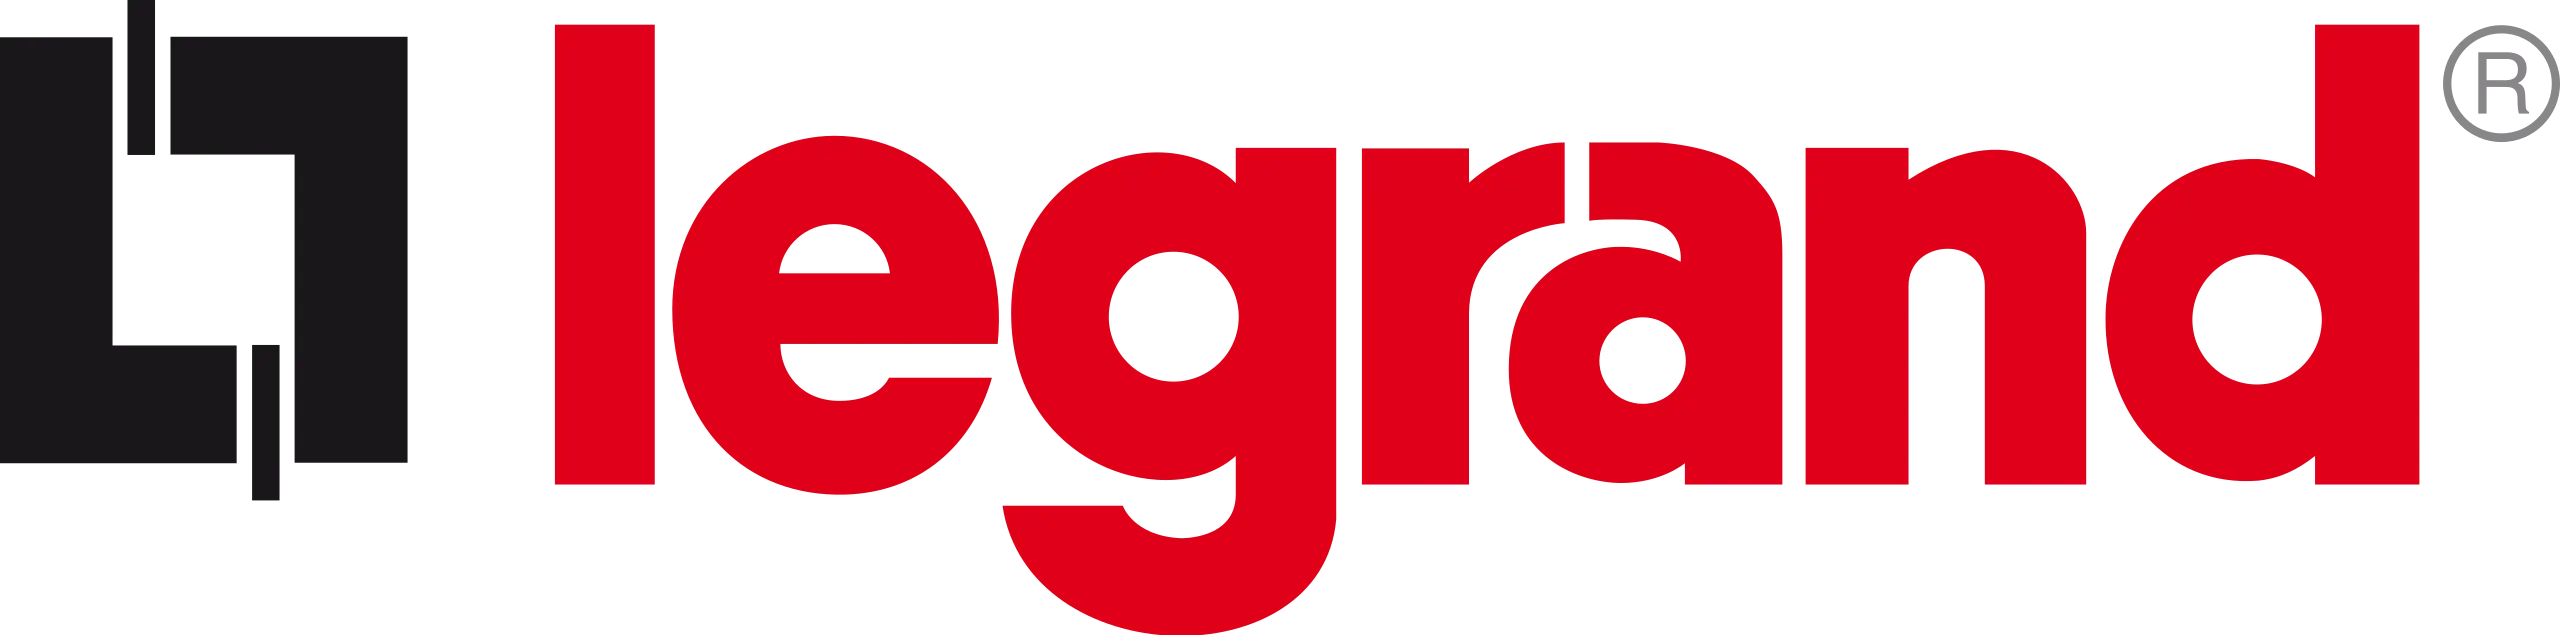   magento 2 sso login | Magento SSO | Magento 2 Single Sign-On | Legrand logo